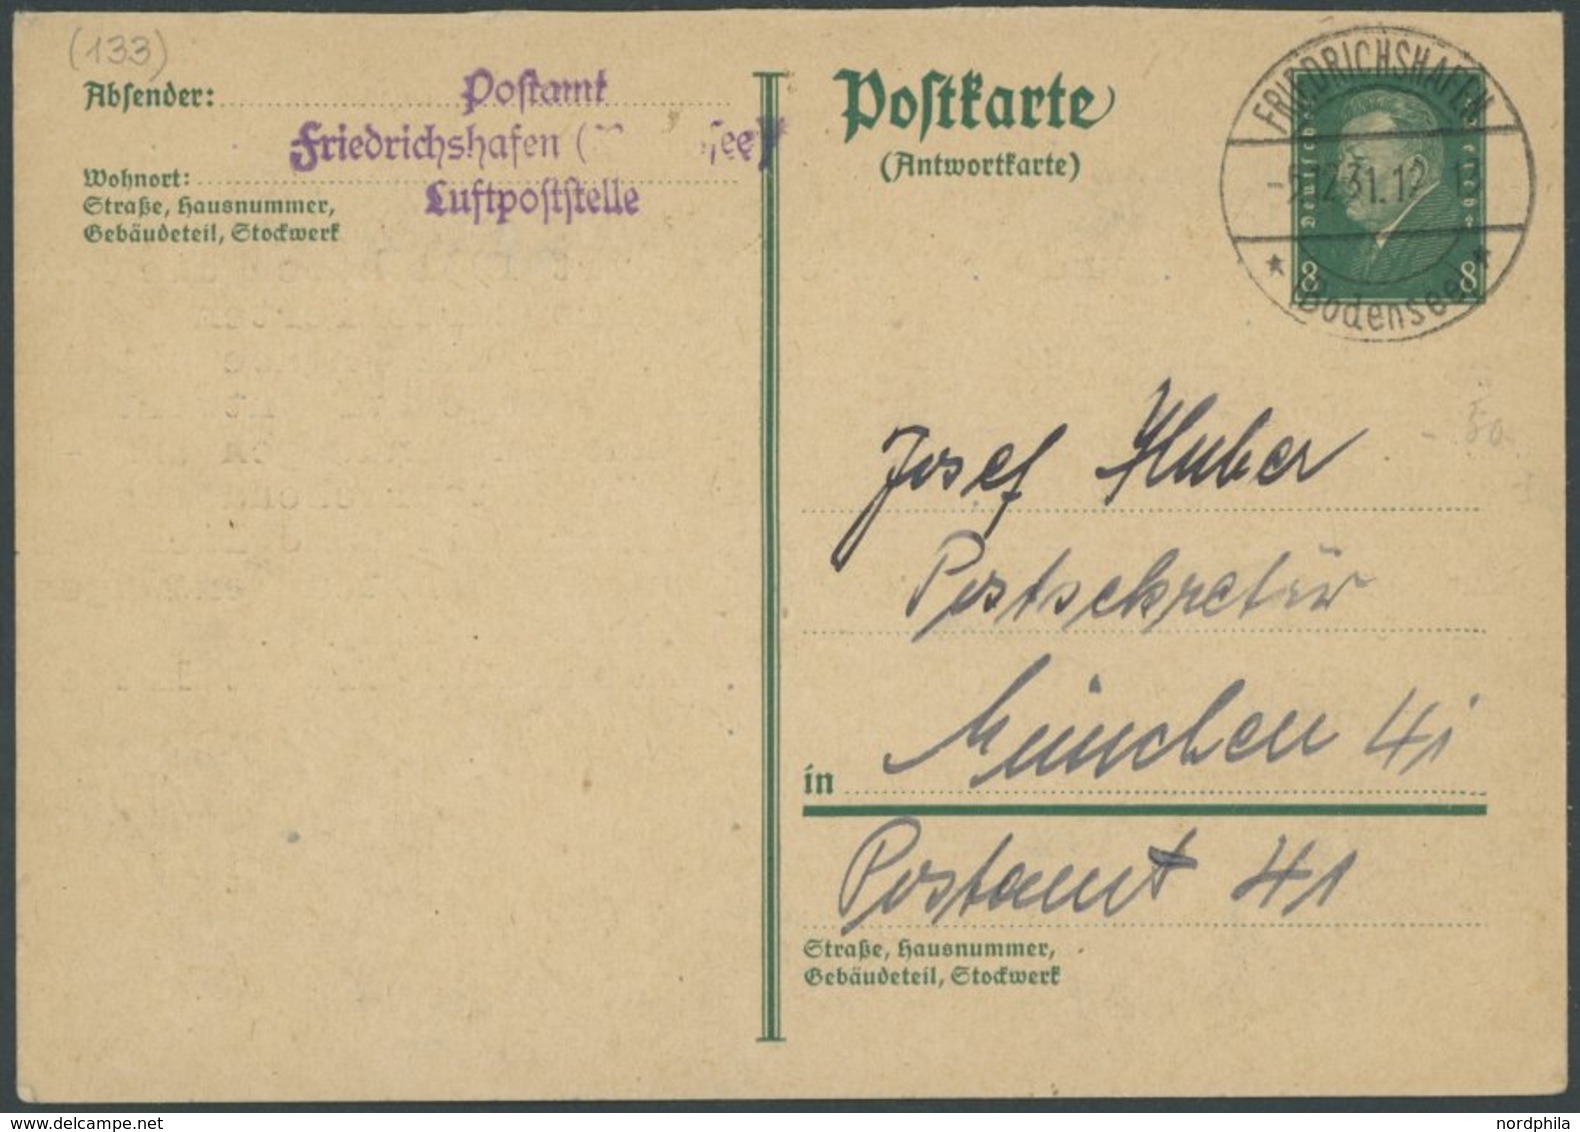 1931, Friedrichshafen Luftpoststelle: Antwortkarte Mit Ablehnung Einer Nachträglichen Anbringung Des Zeppelin-Rückfahrts - Airmail & Zeppelin